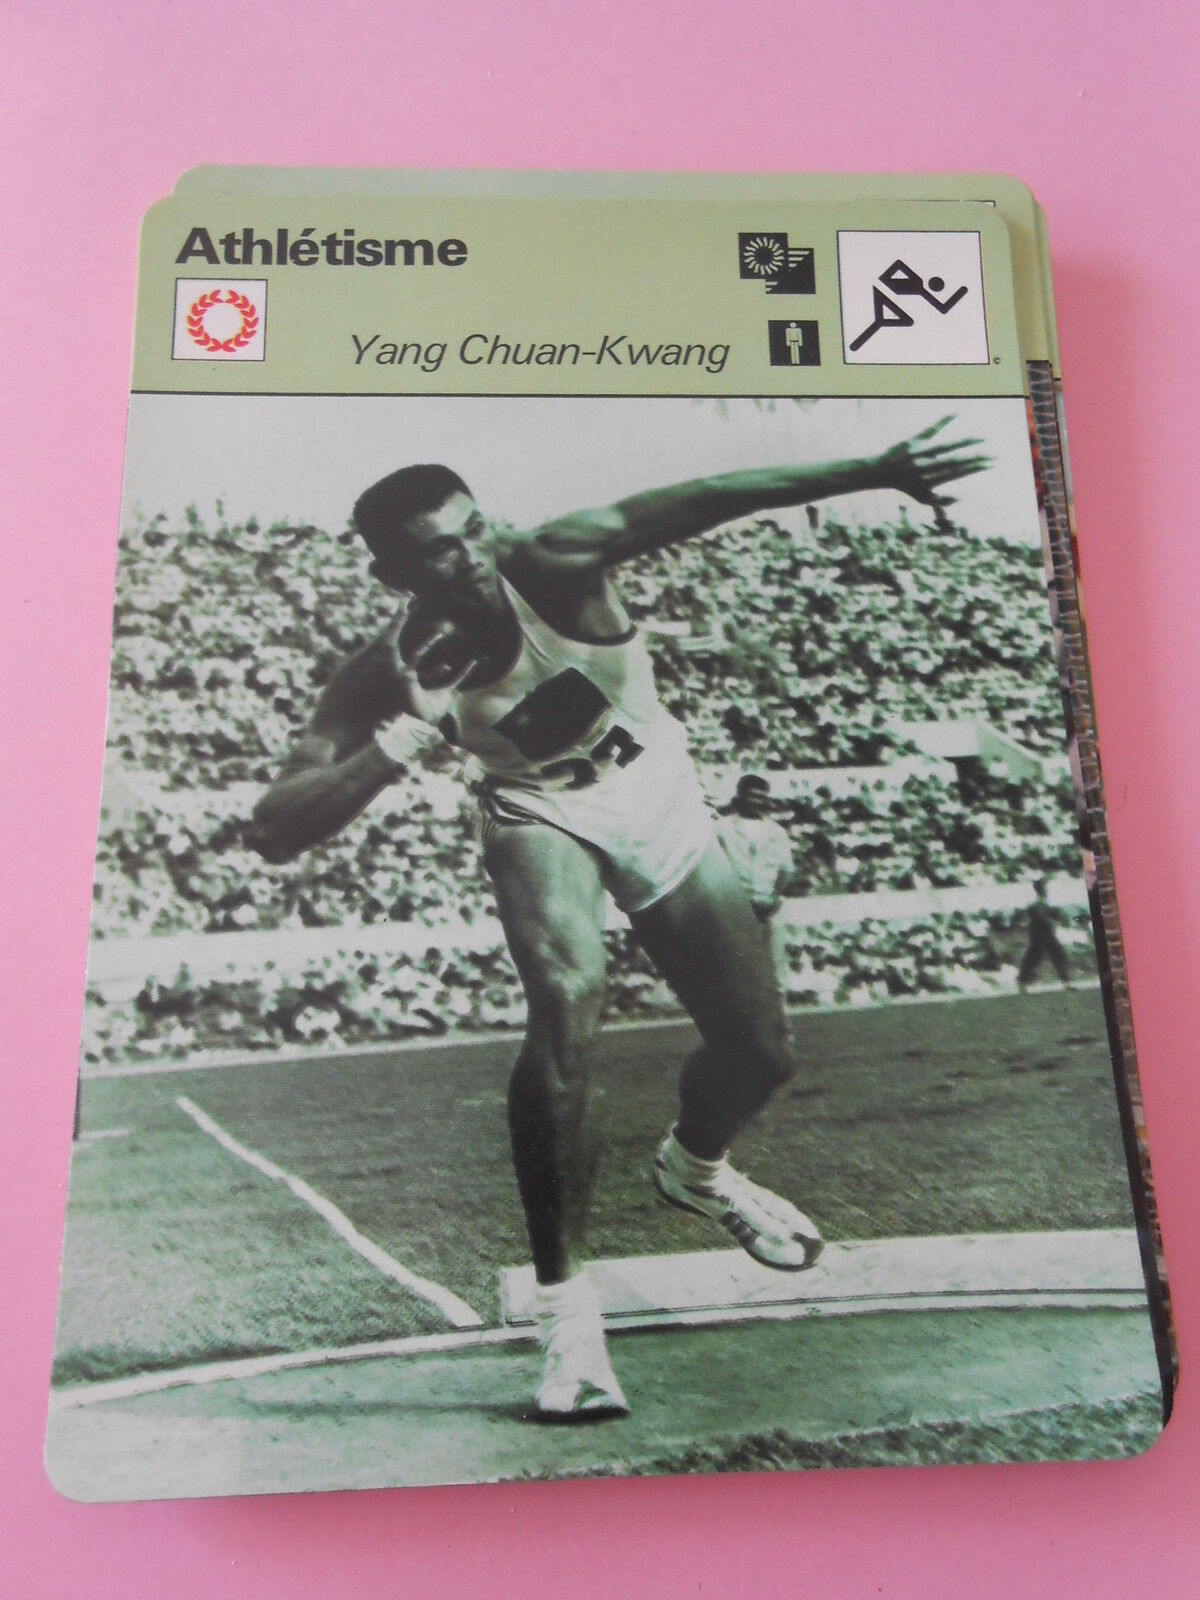 1978 Yang Chuan-Kwang Athletics Born in Taitung Formosa Card Card